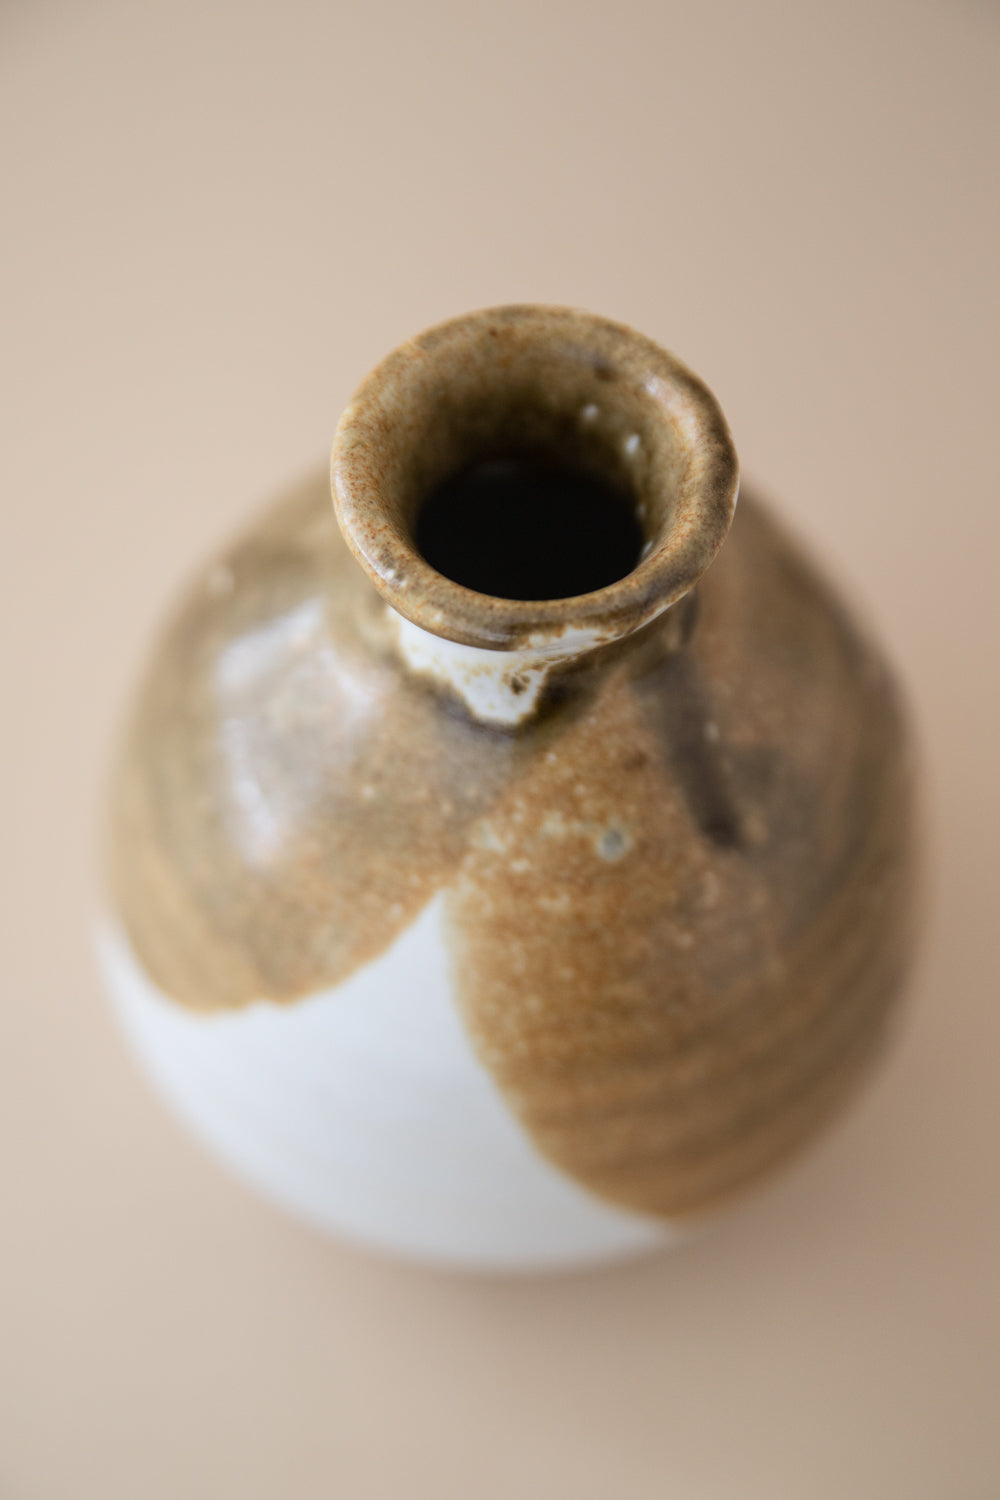 Beige + White Ceramic Vase